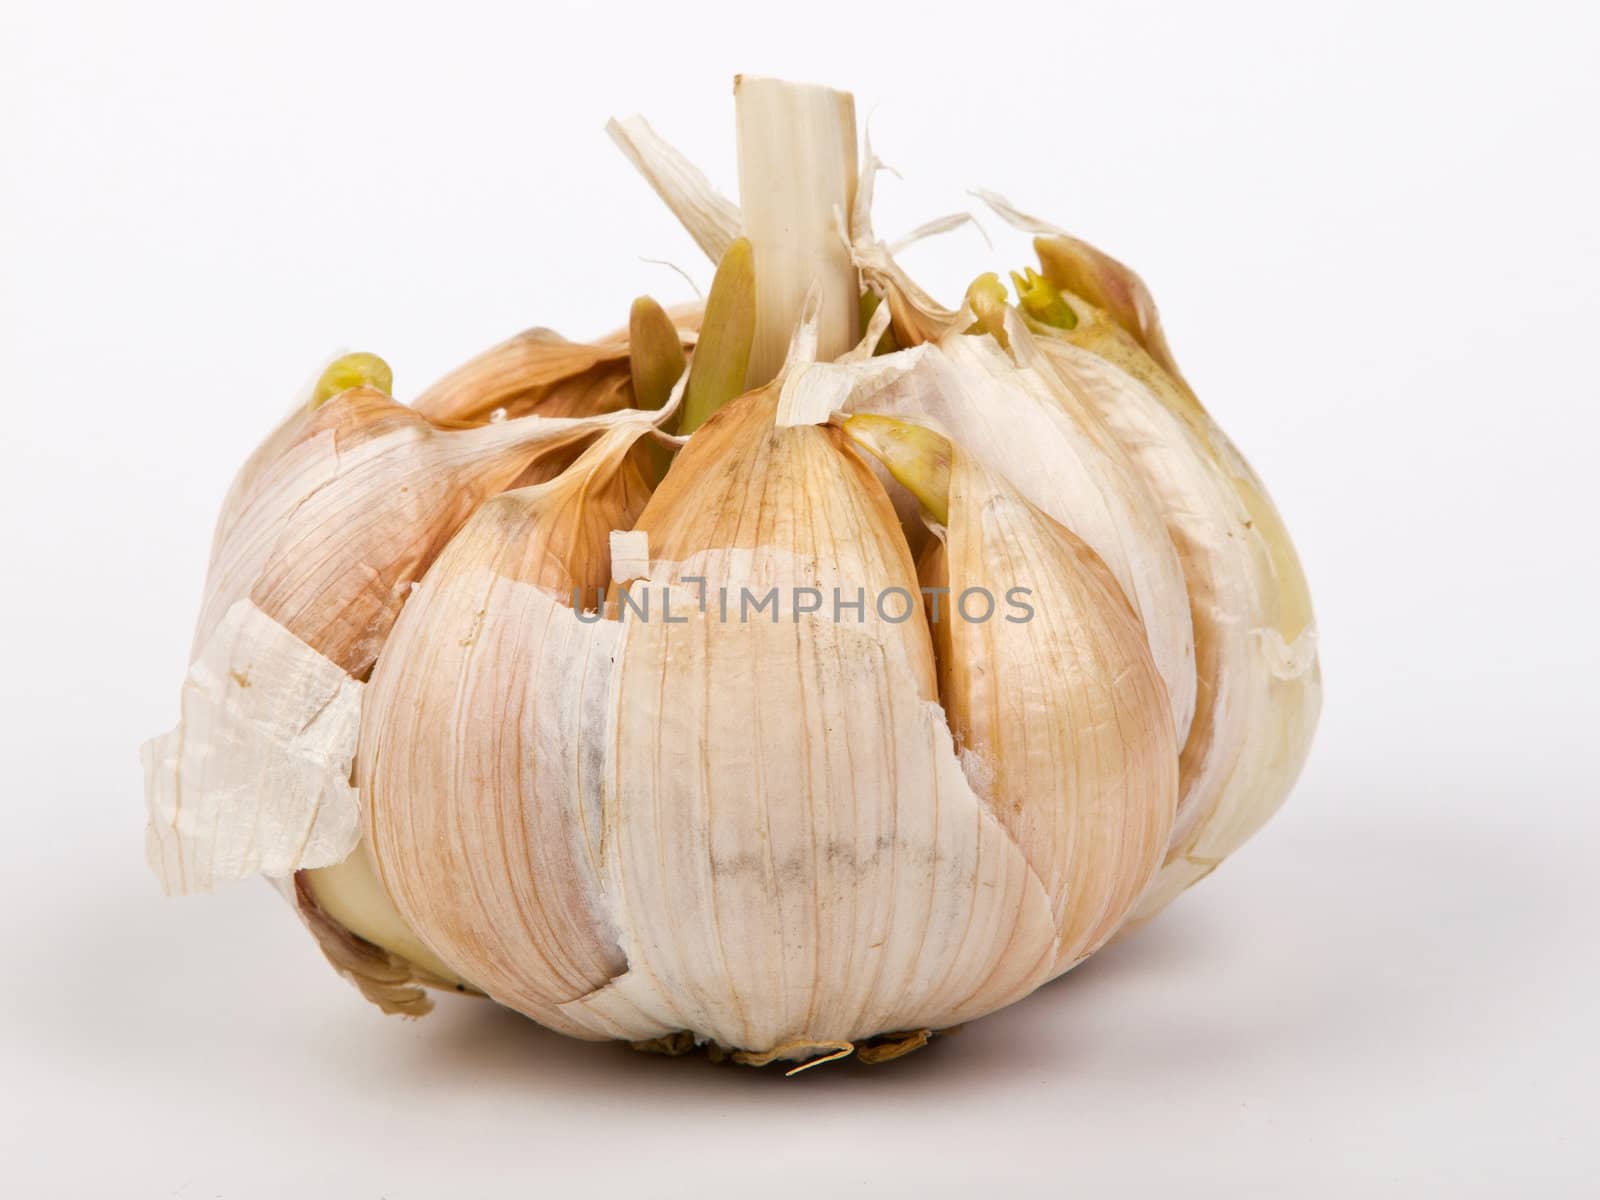 garlic by nevenm